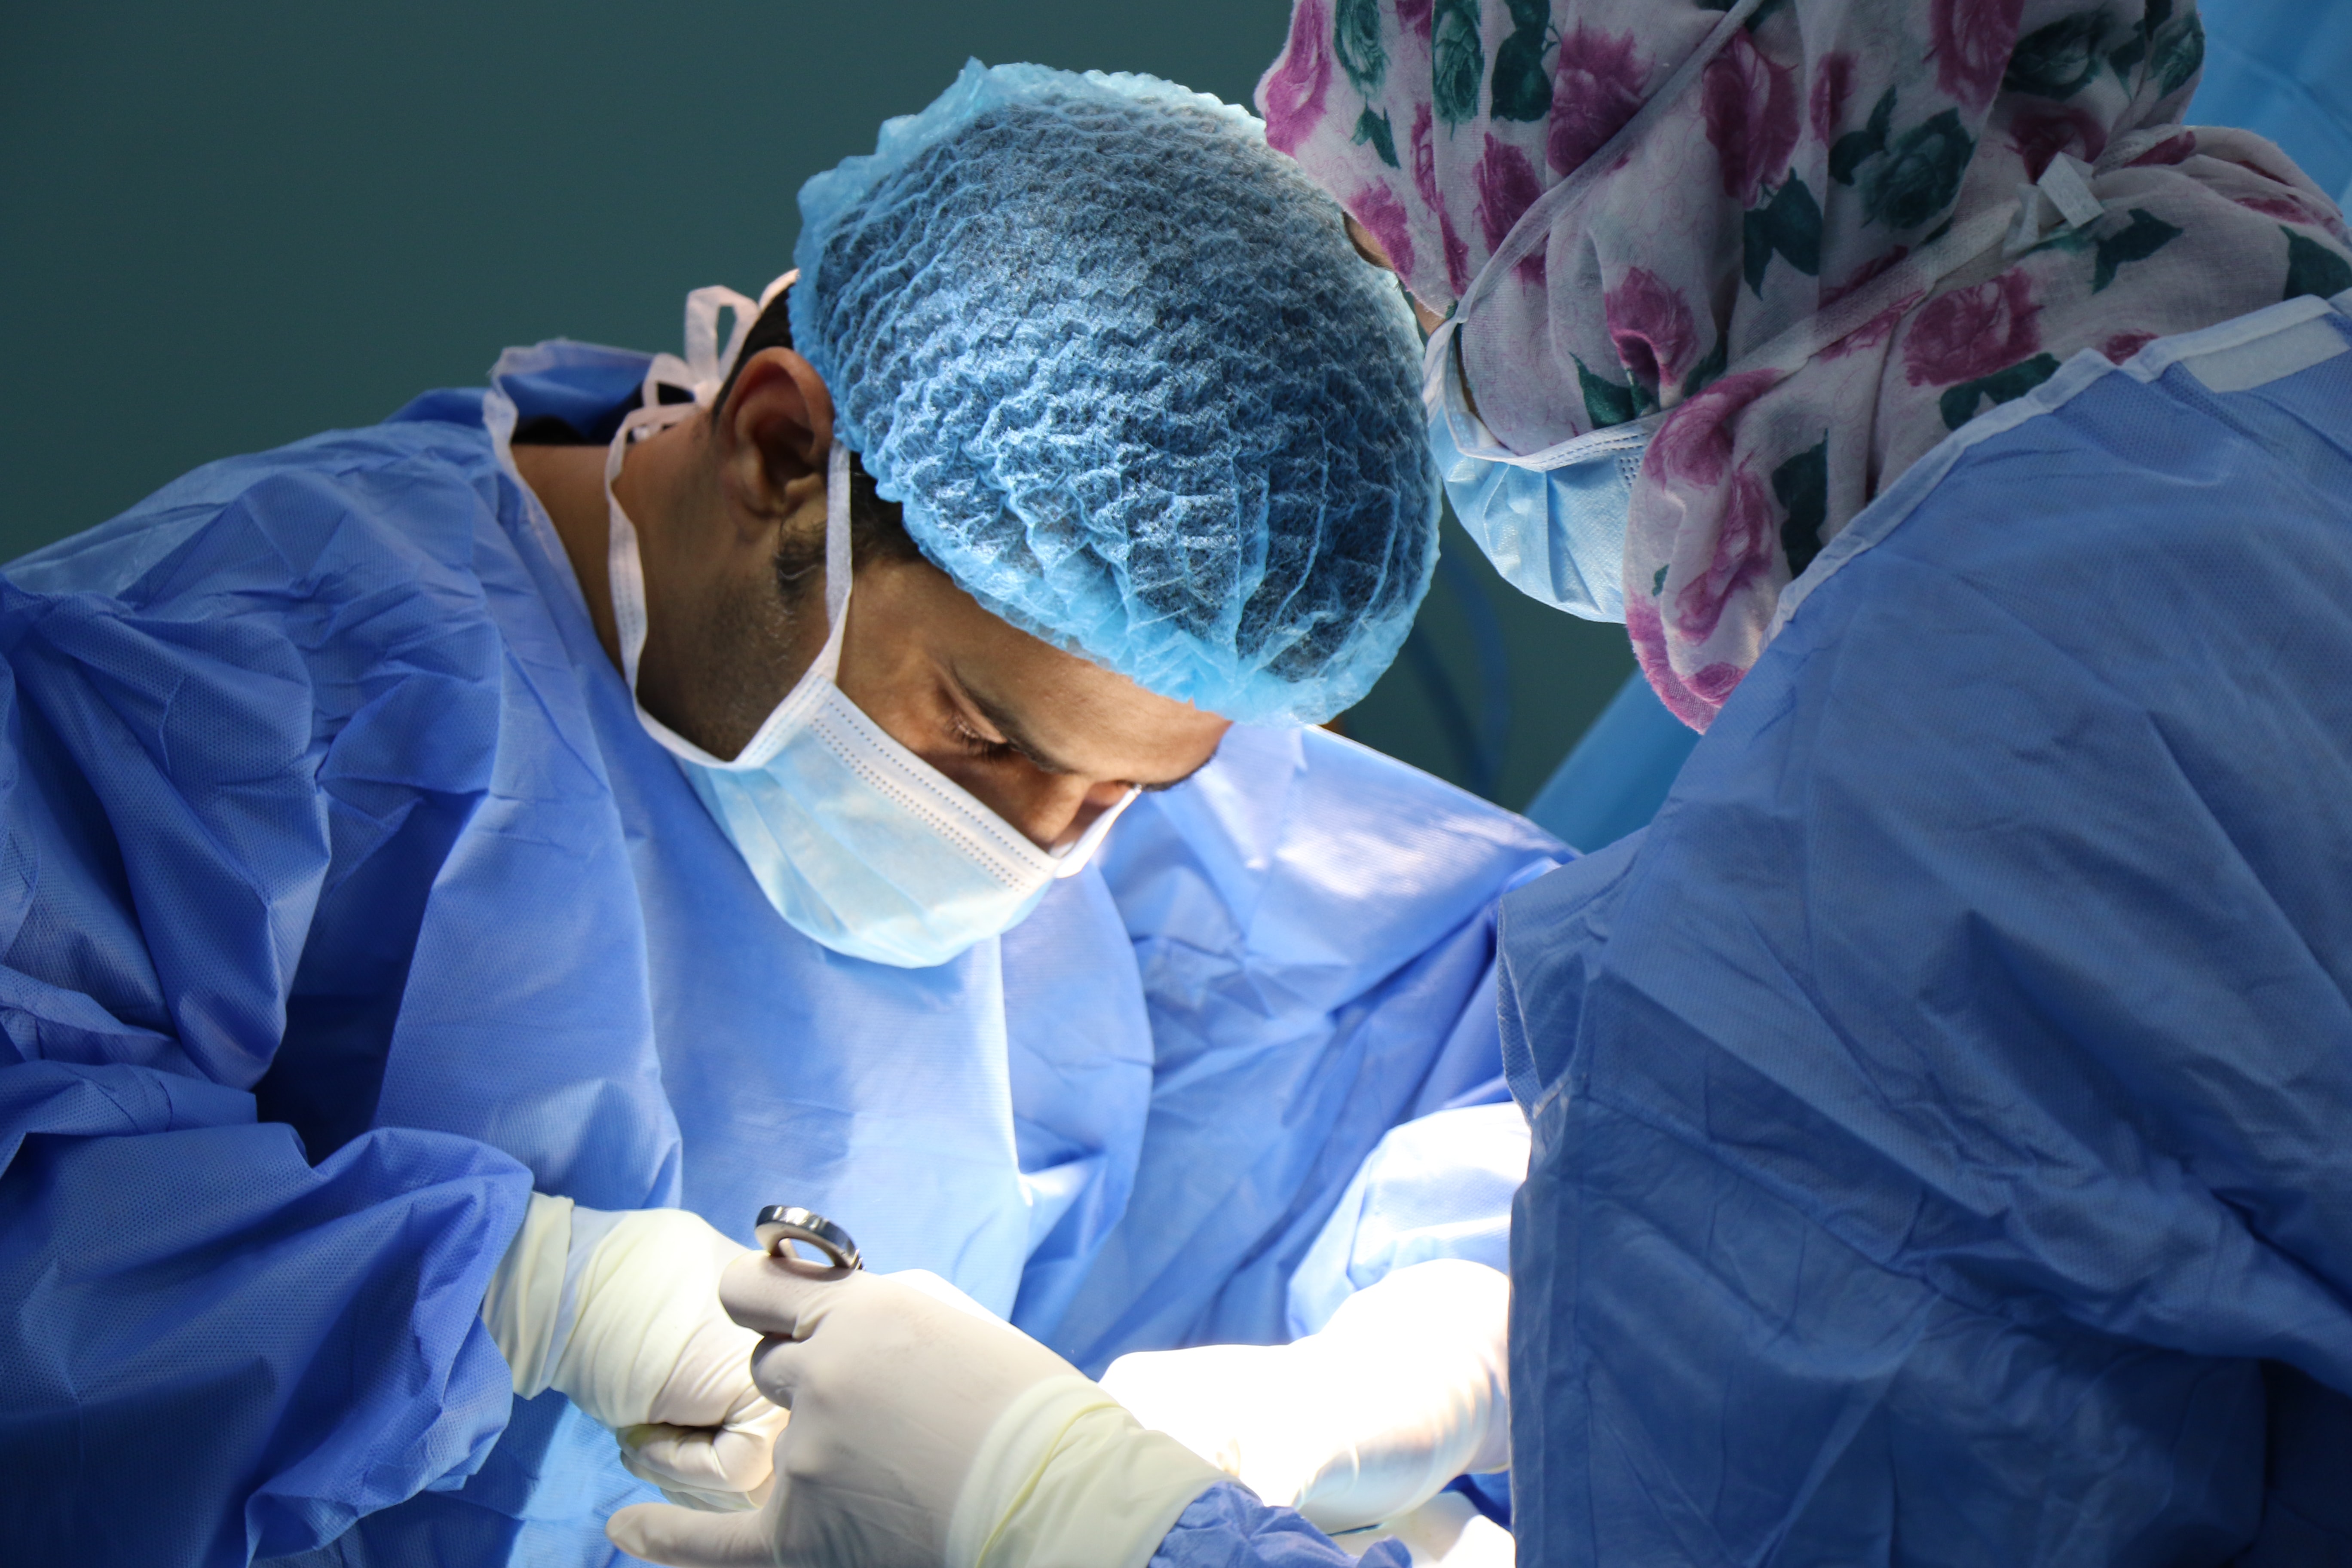 Médico descobre que não há mais tumor durante cirurgia: “Deus cura”